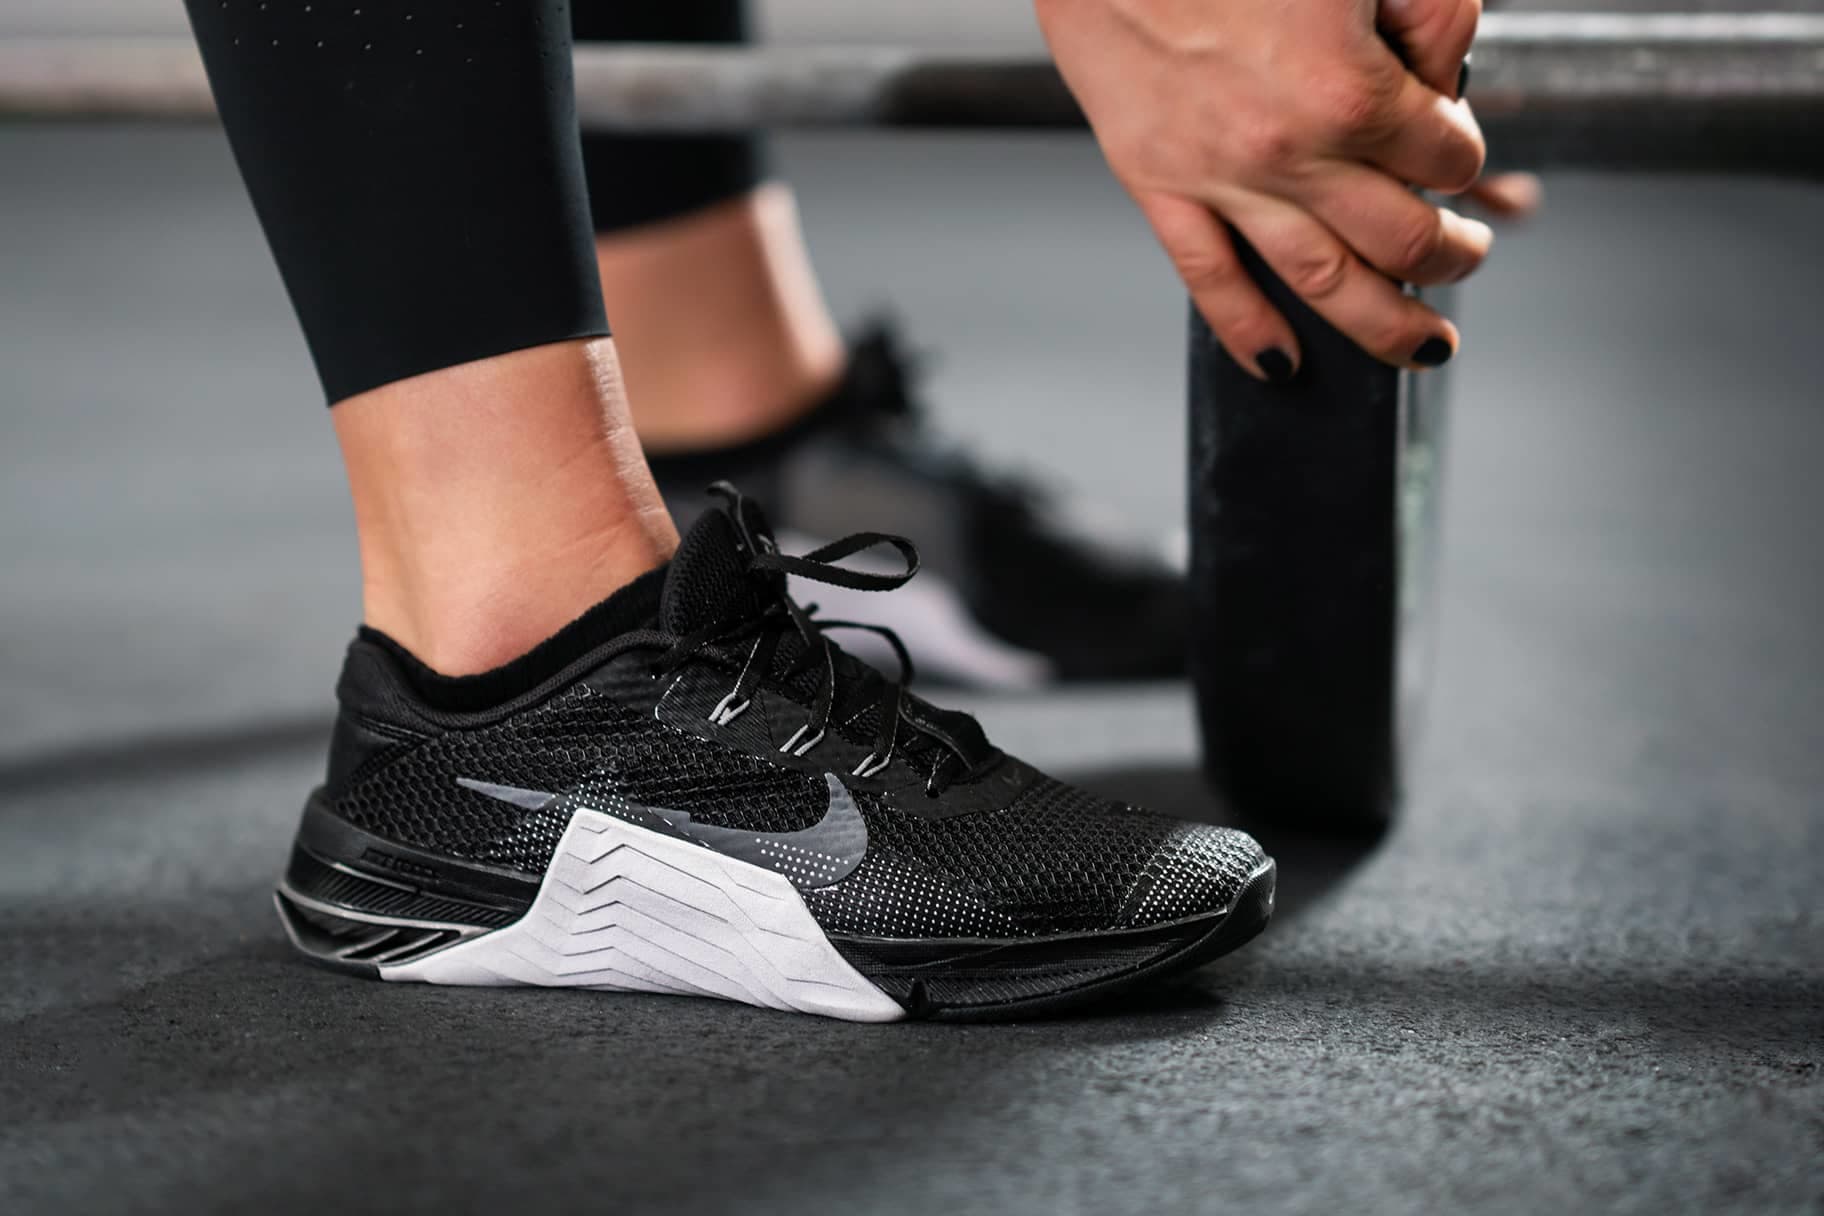 Listo Diplomático Usual Cuáles son las mejores zapatillas Nike para CrossFit?. Nike ES